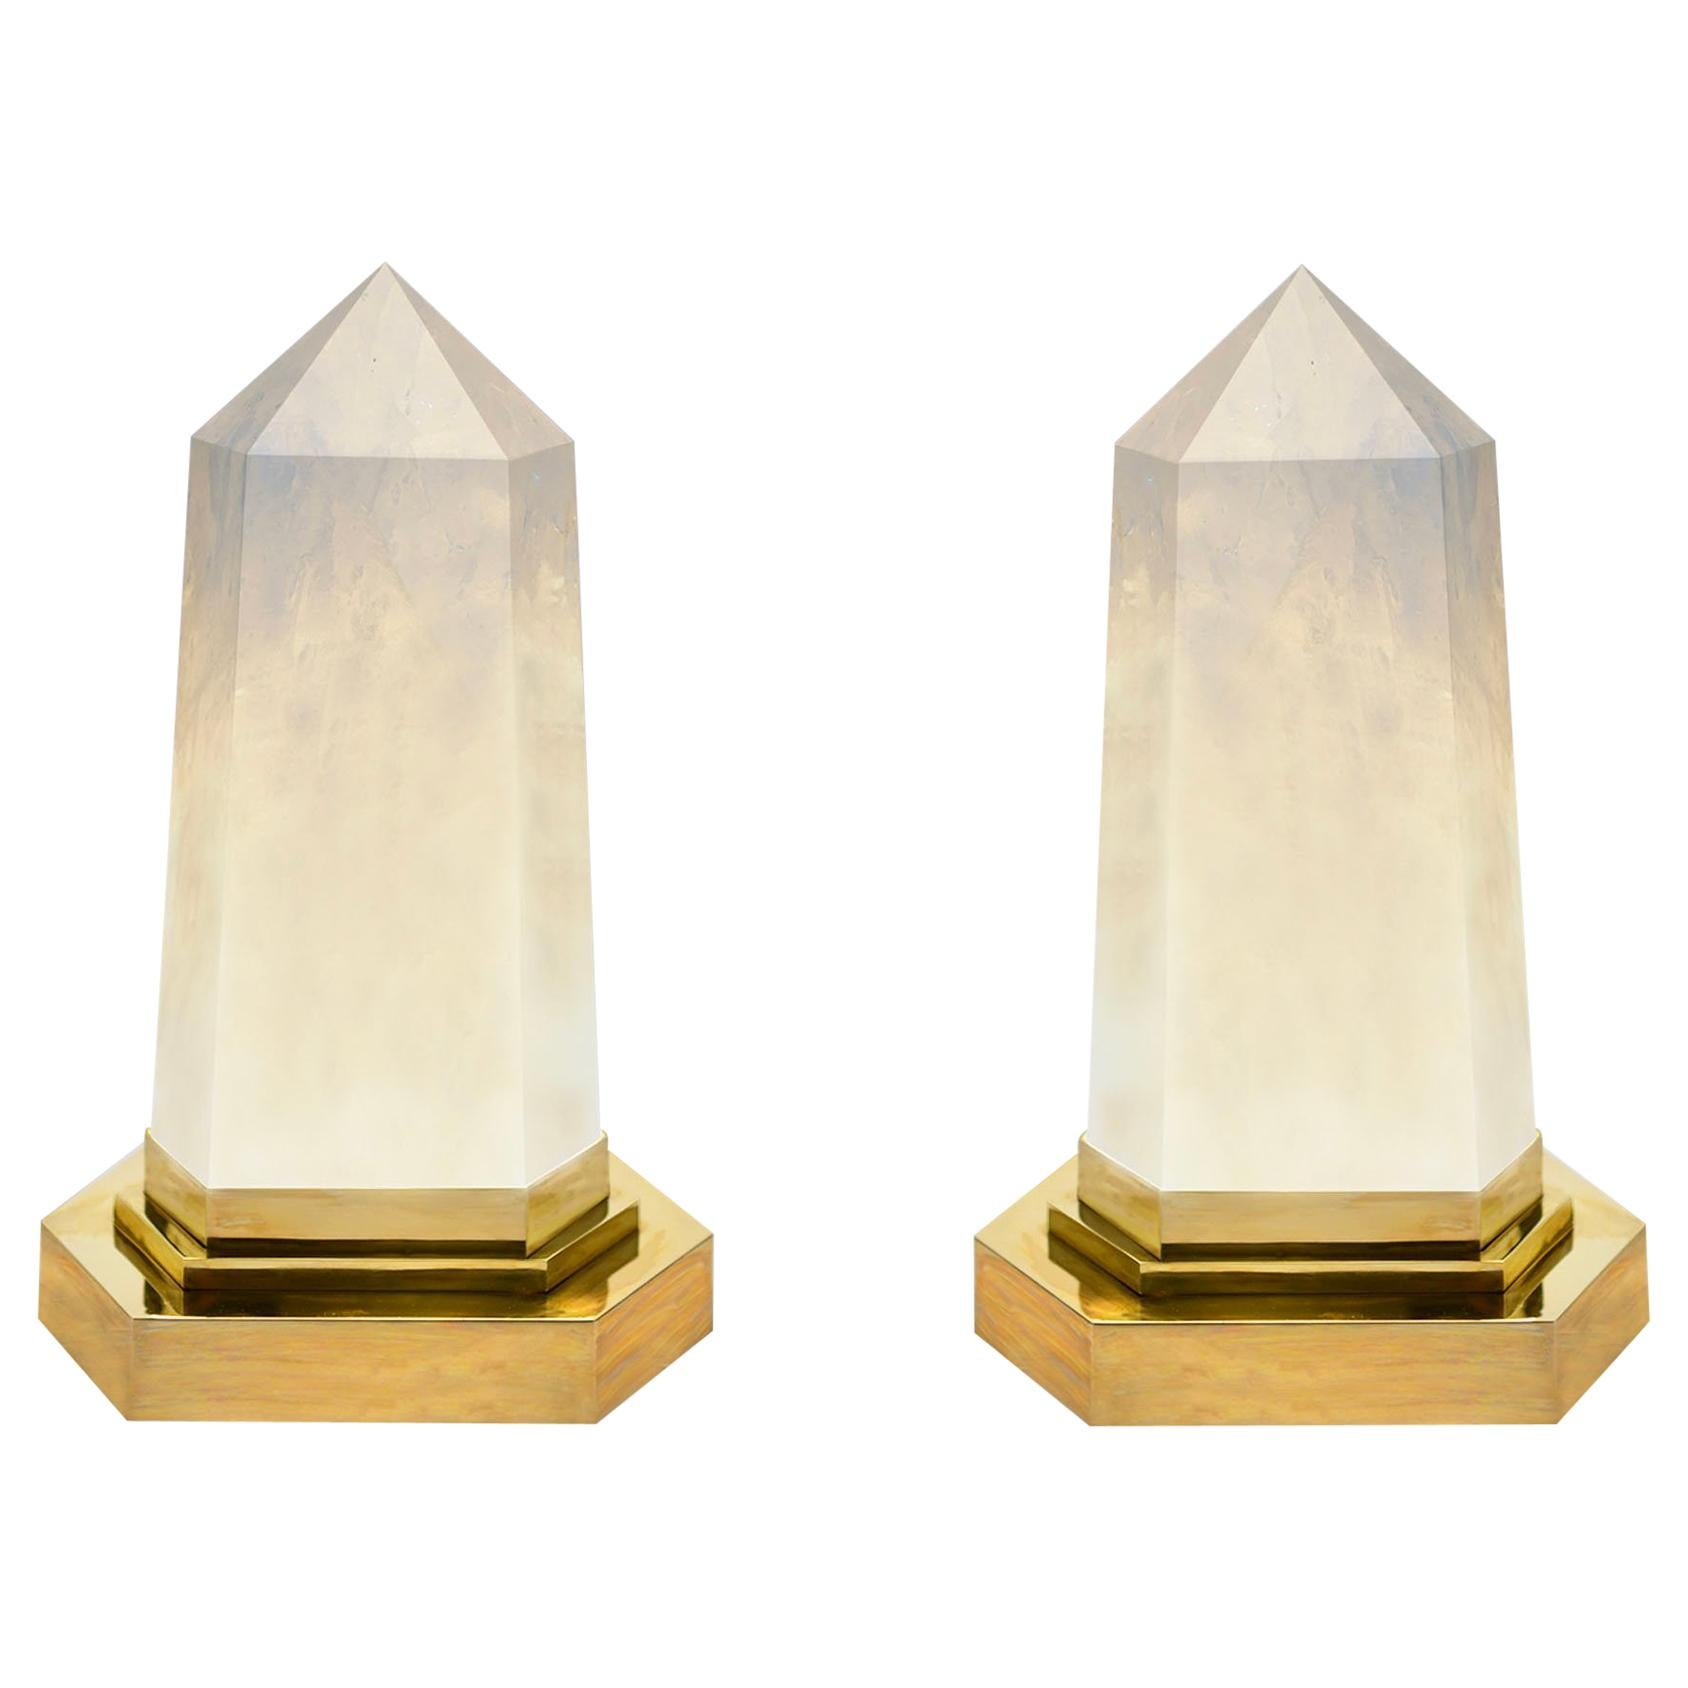 Rock Crystal Obelisk Lights by Phoenix For Sale